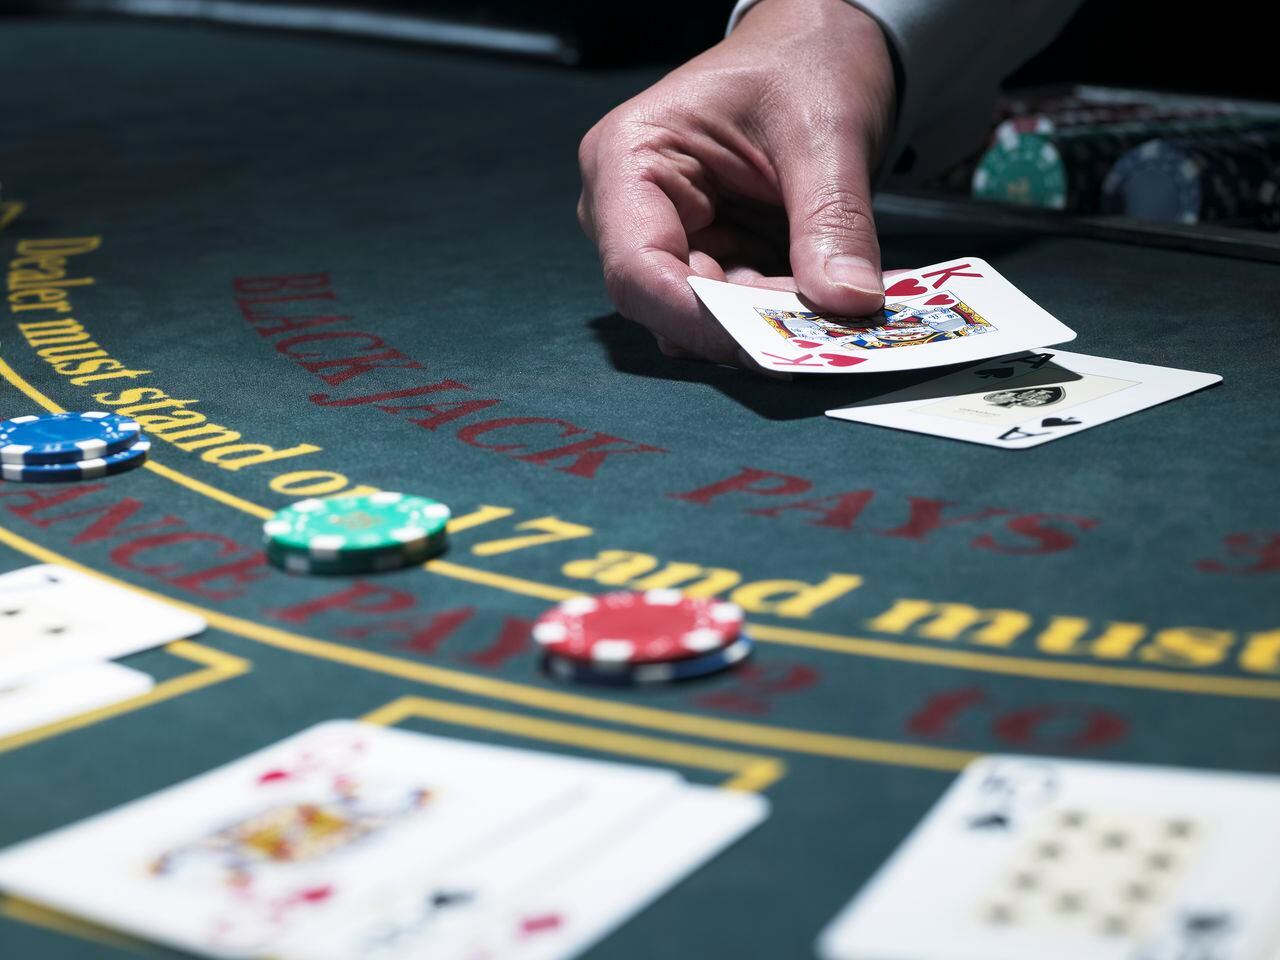 Los casinos proporcionan un escape temporal de la rutina diaria y las preocupaciones cotidianas.